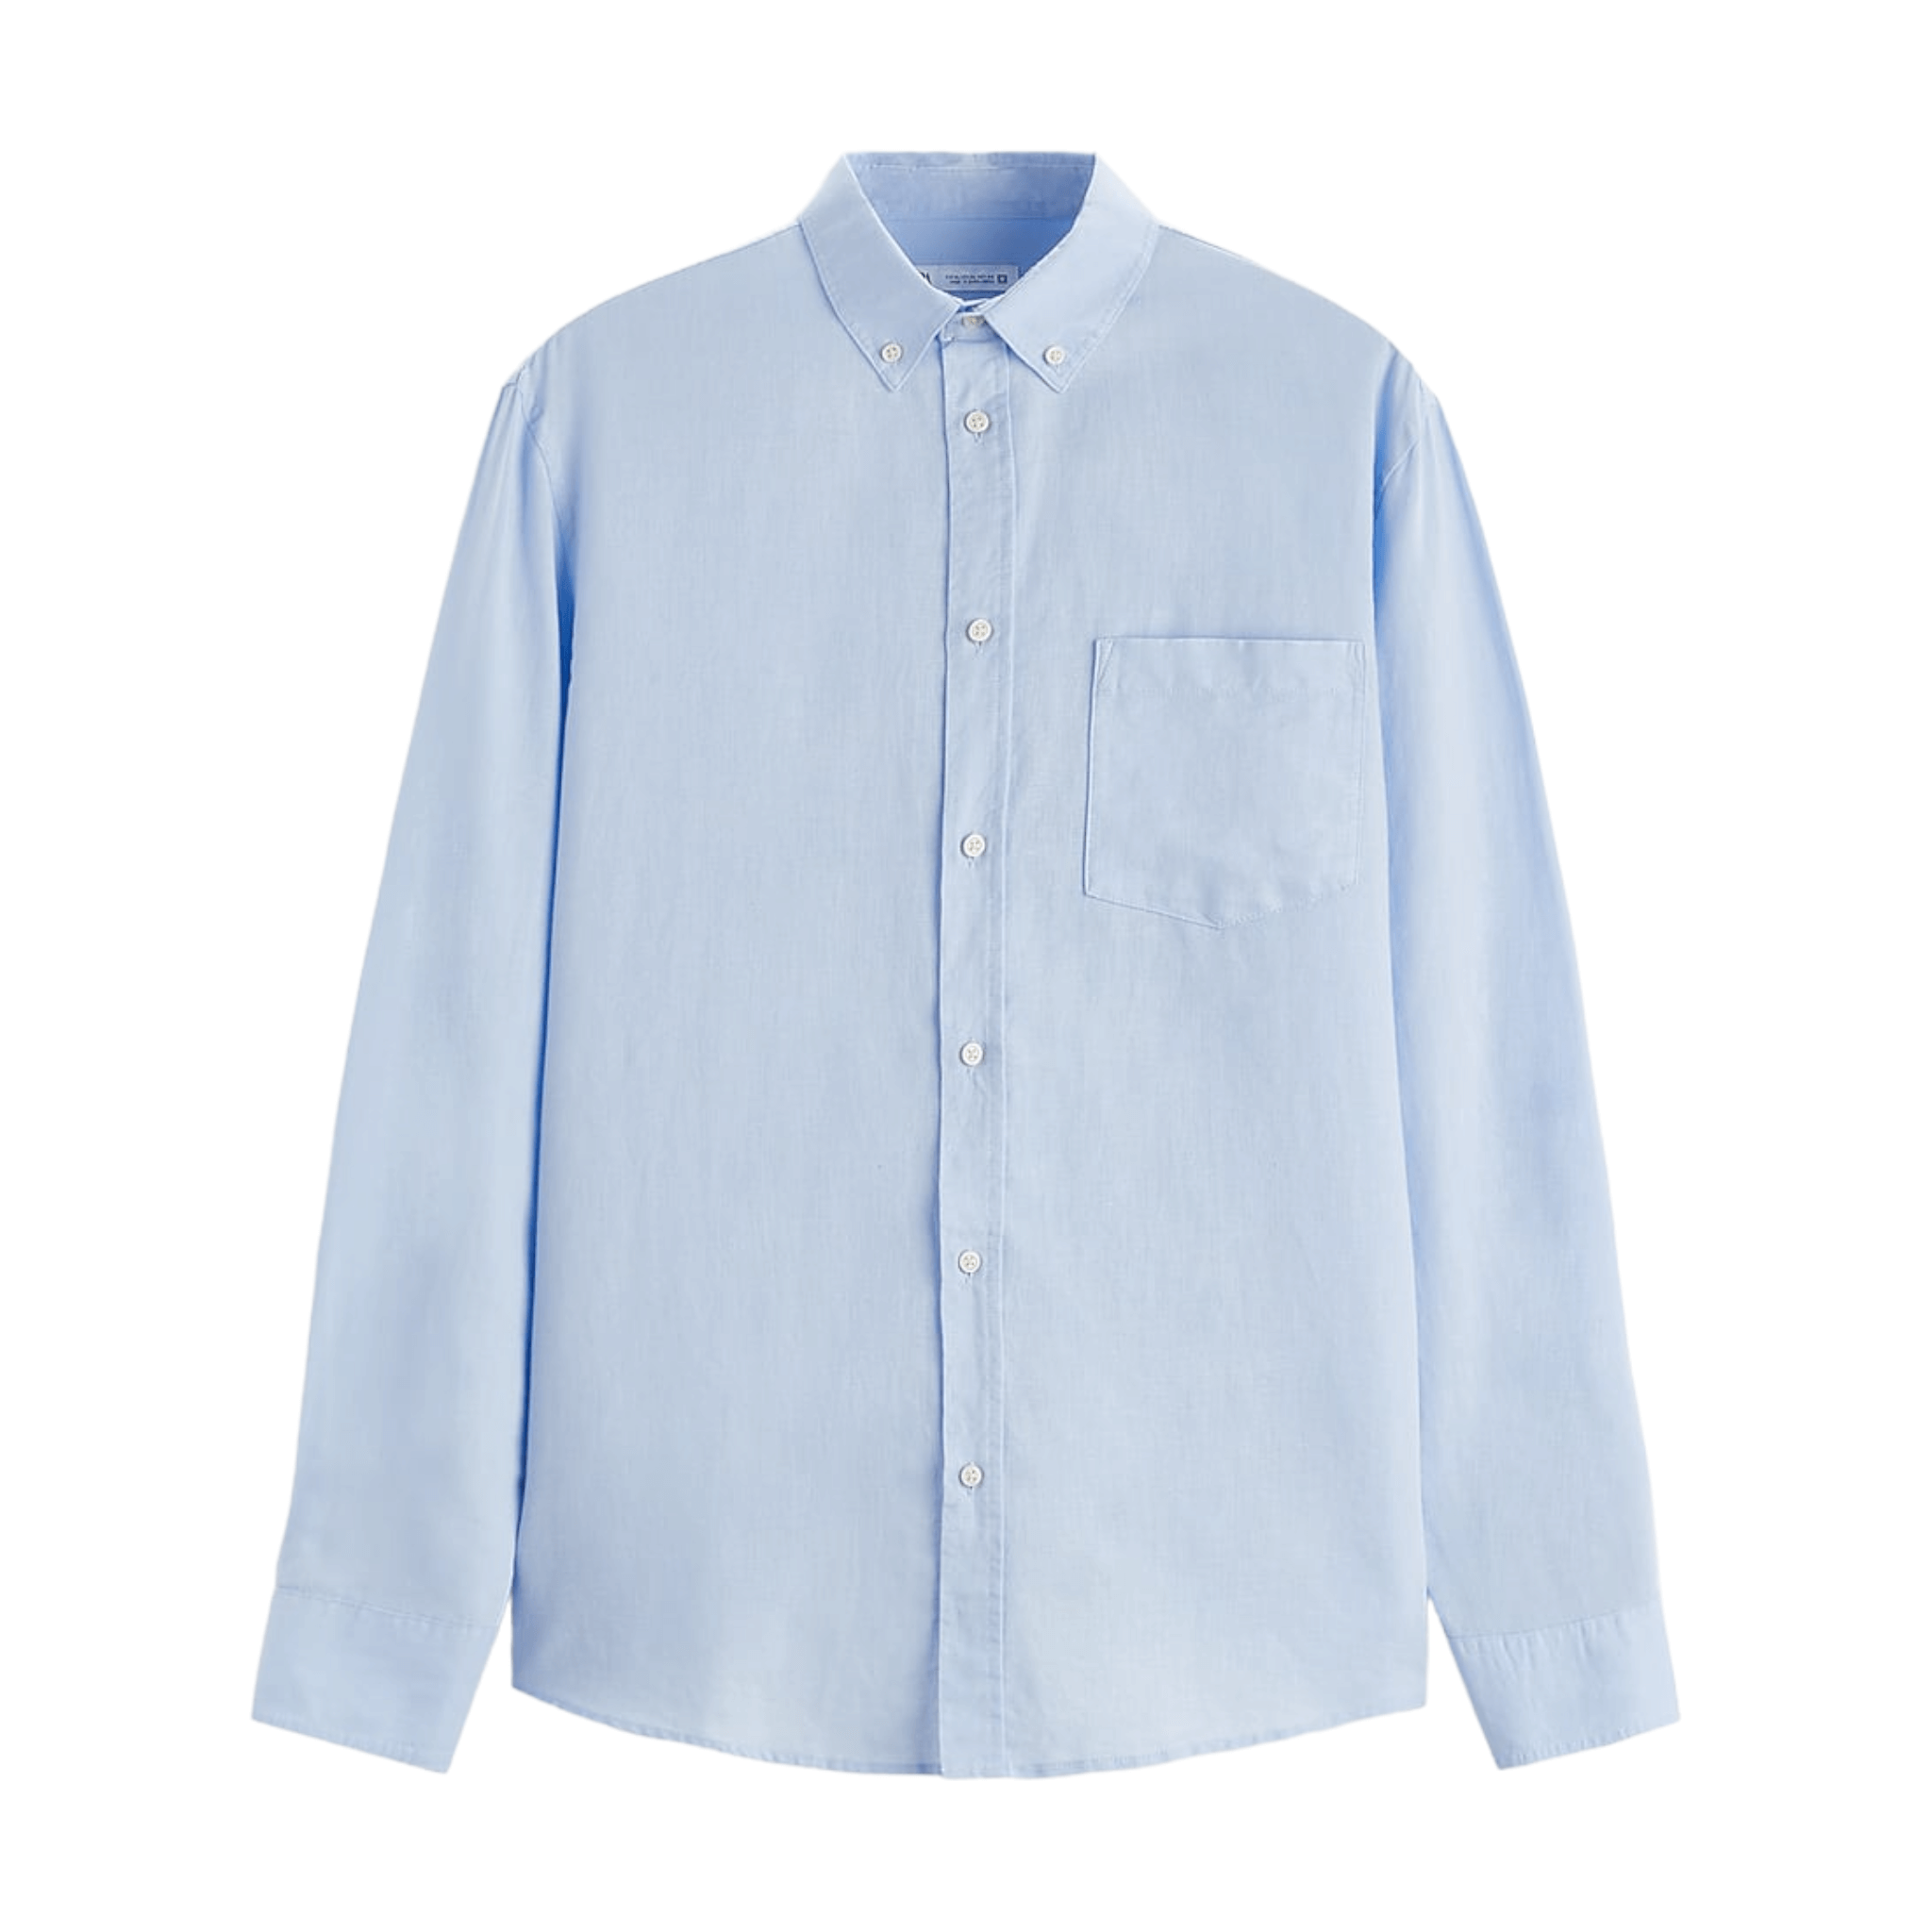 Рубашка Zara Cotton - Linen, голубой рубашка zara linen оливковый